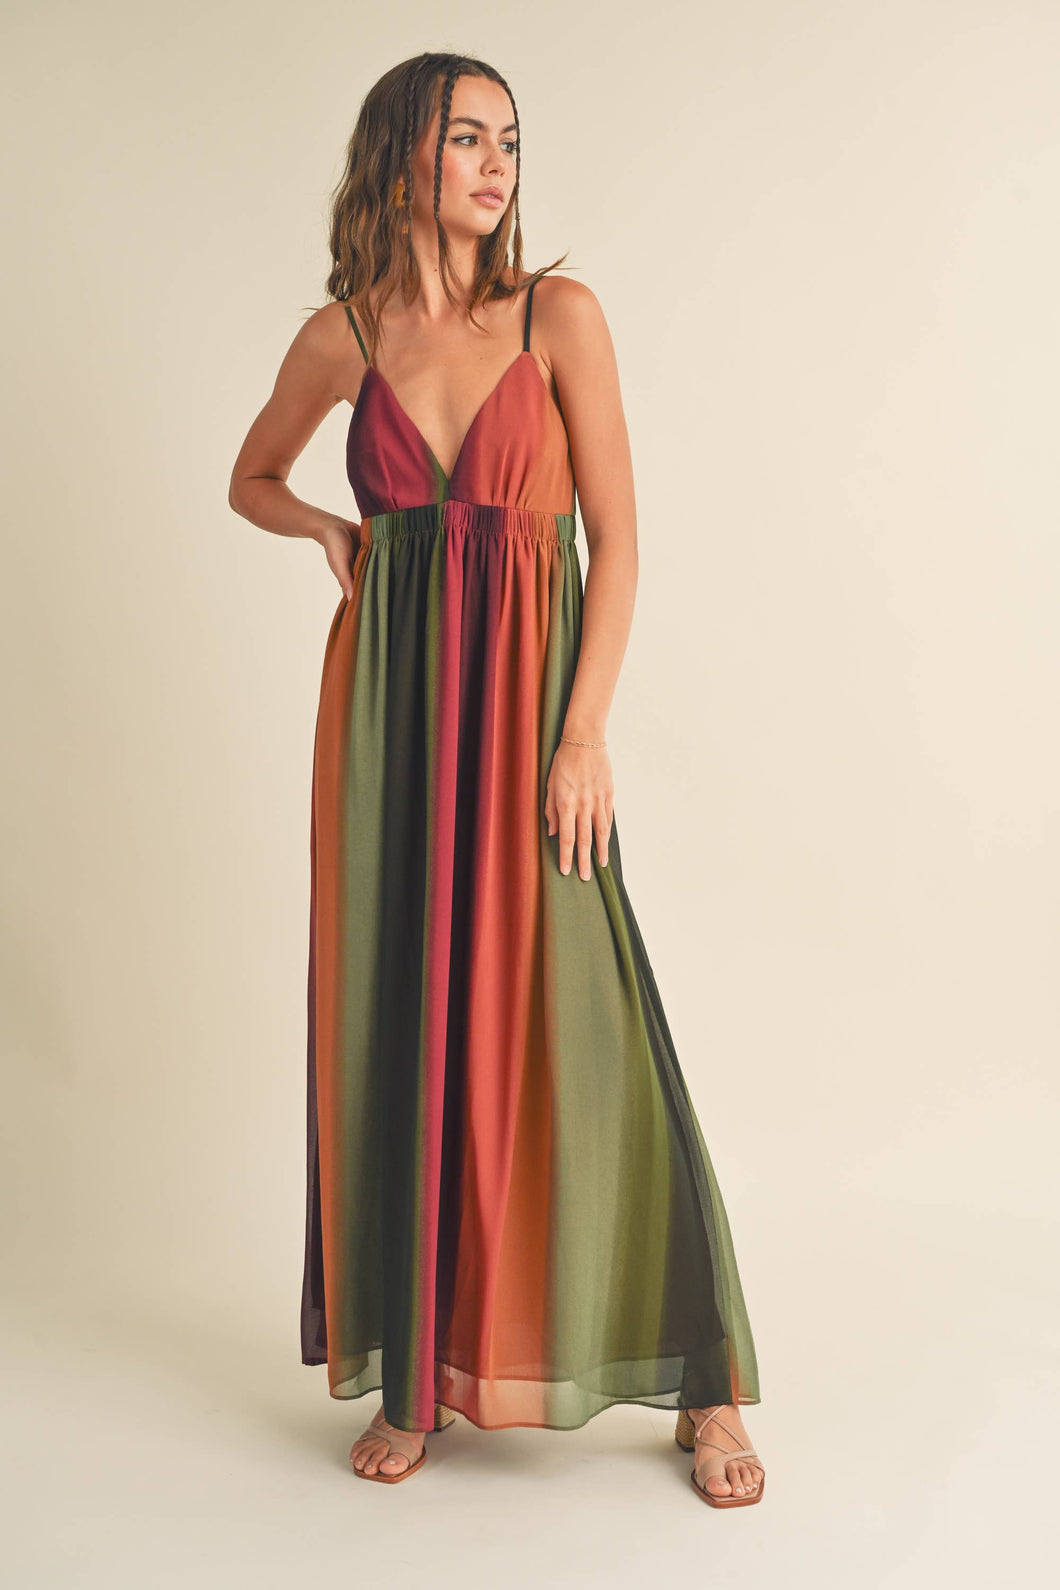 CHIFFON TIE-DYE PRINT LONG DRESS: Multi-Colored